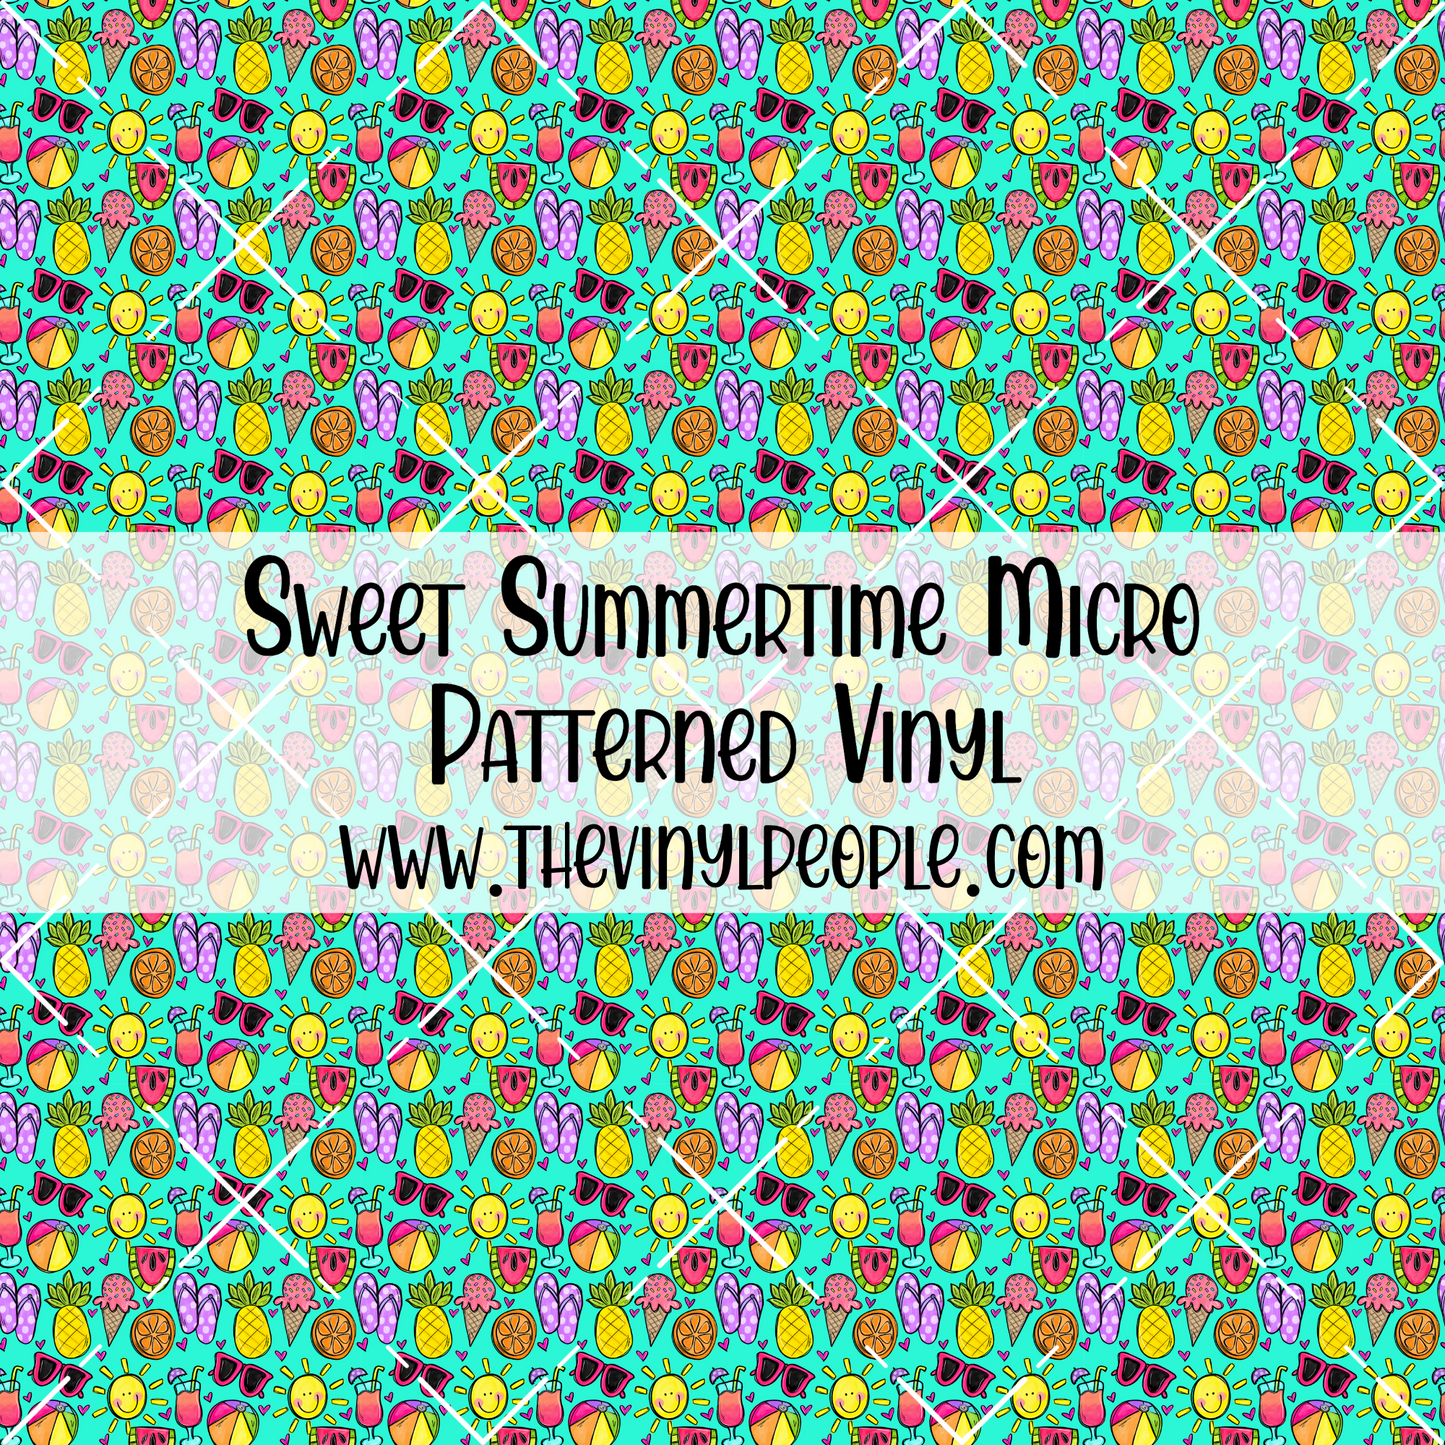 Sweet Summertime Patterned Vinyl